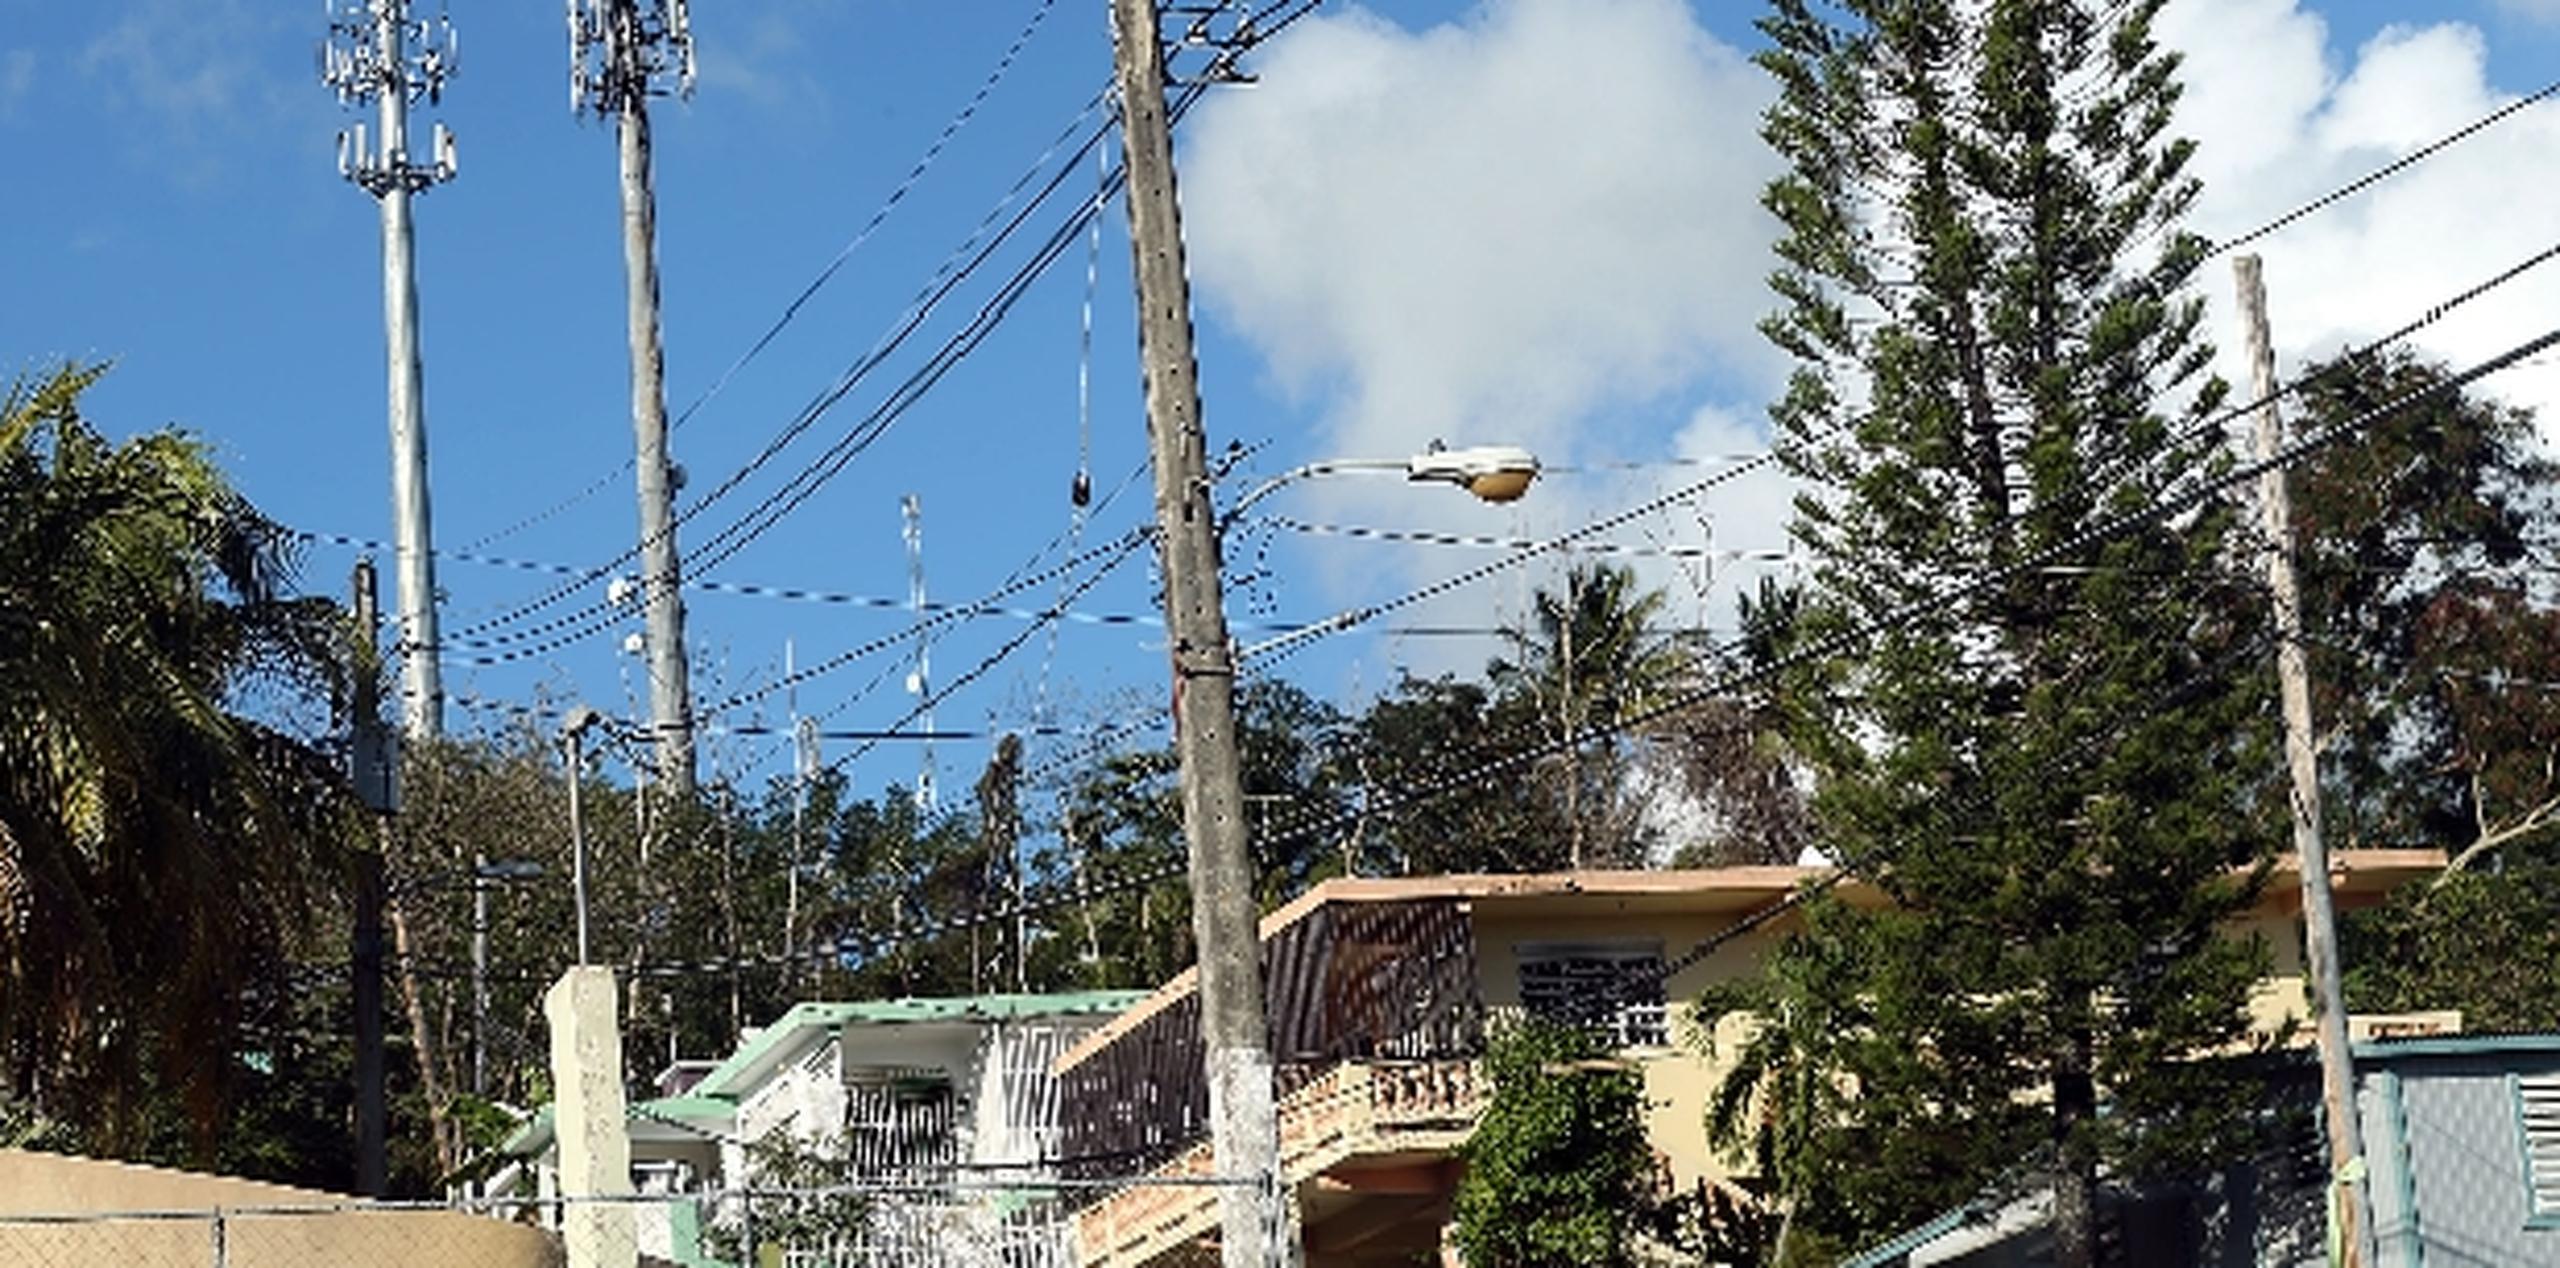 En esta foto se evidencia la cercanía de las antenas a las residencias de la comunidad en Naguabo. (jose.reyes@gfrmedia.com)